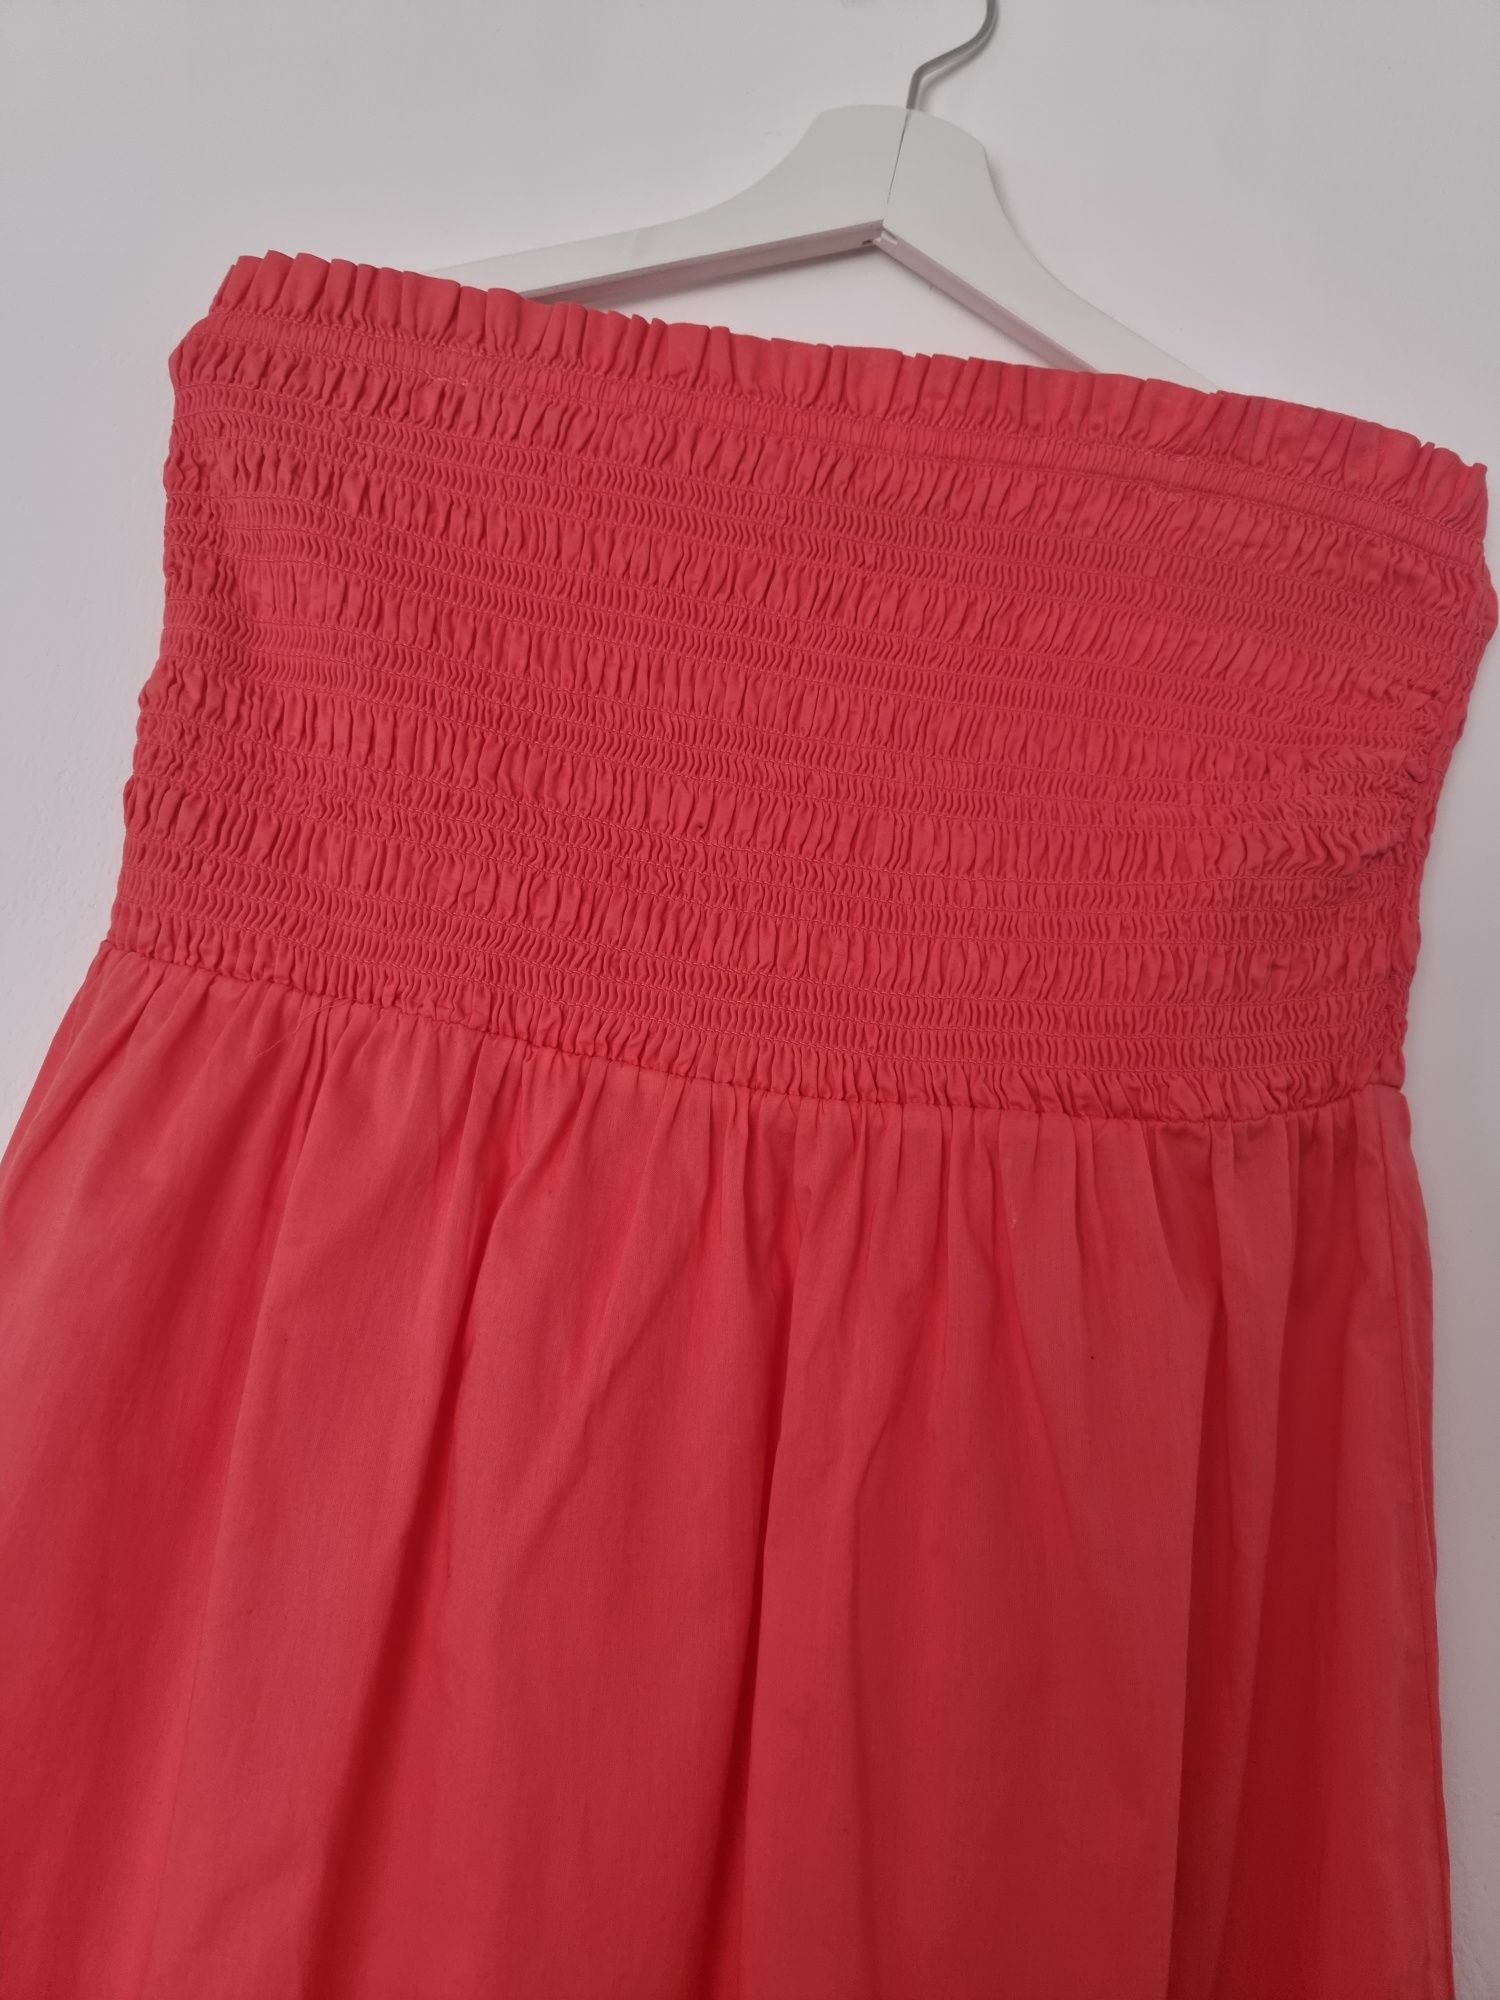 Sukienka malinowa letnia bez rękawów rozmiar 44 XXL Marks&Spencer